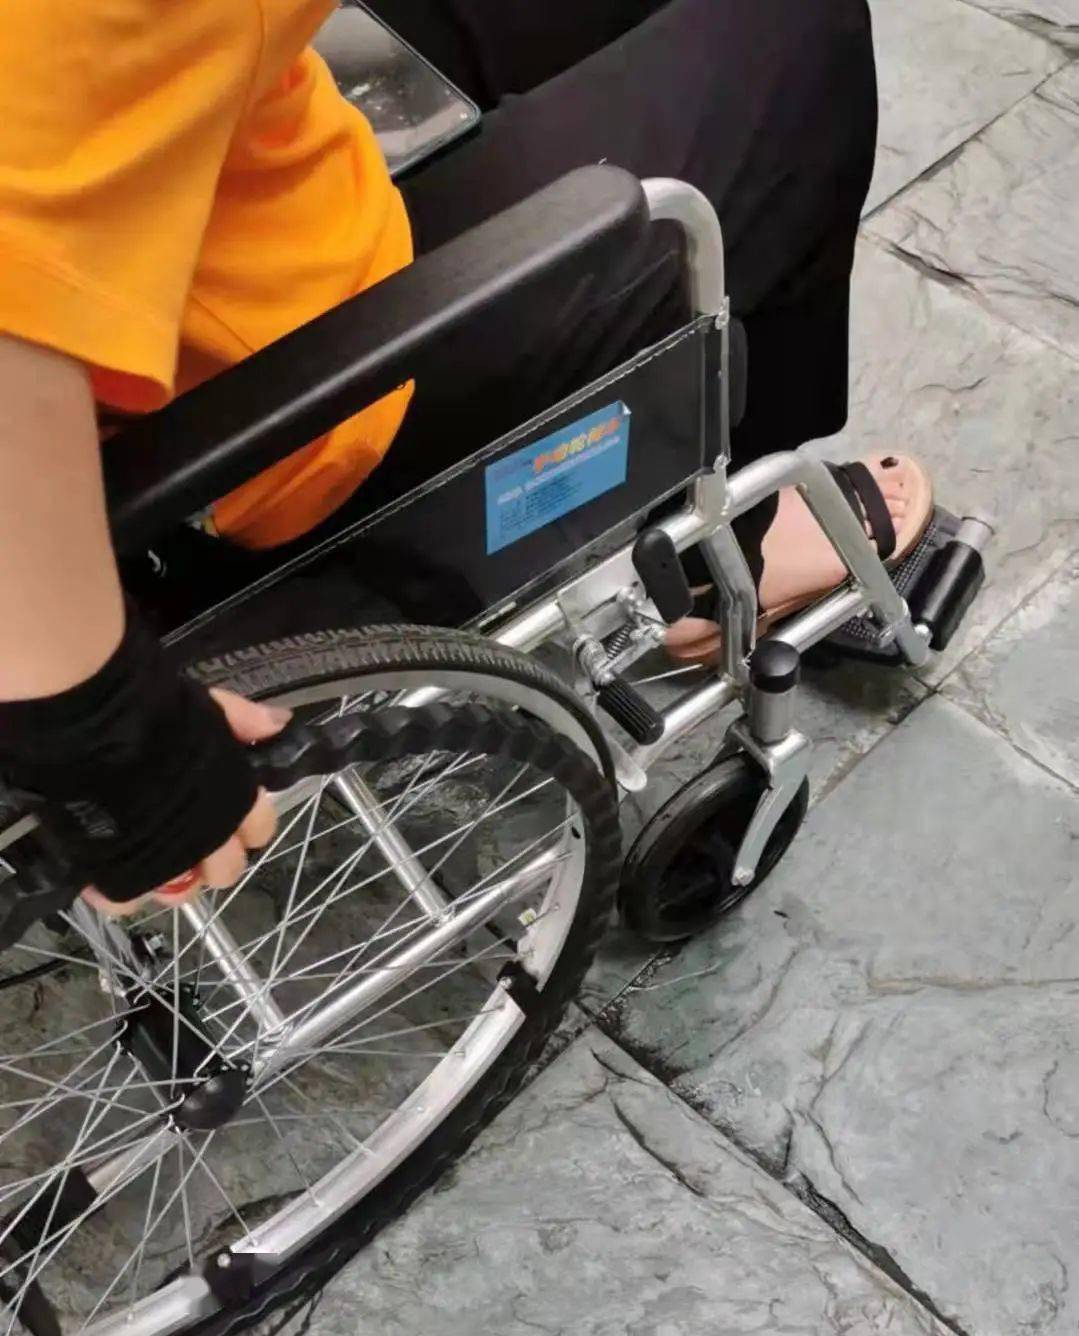 坐轮椅拍腿的照片图片